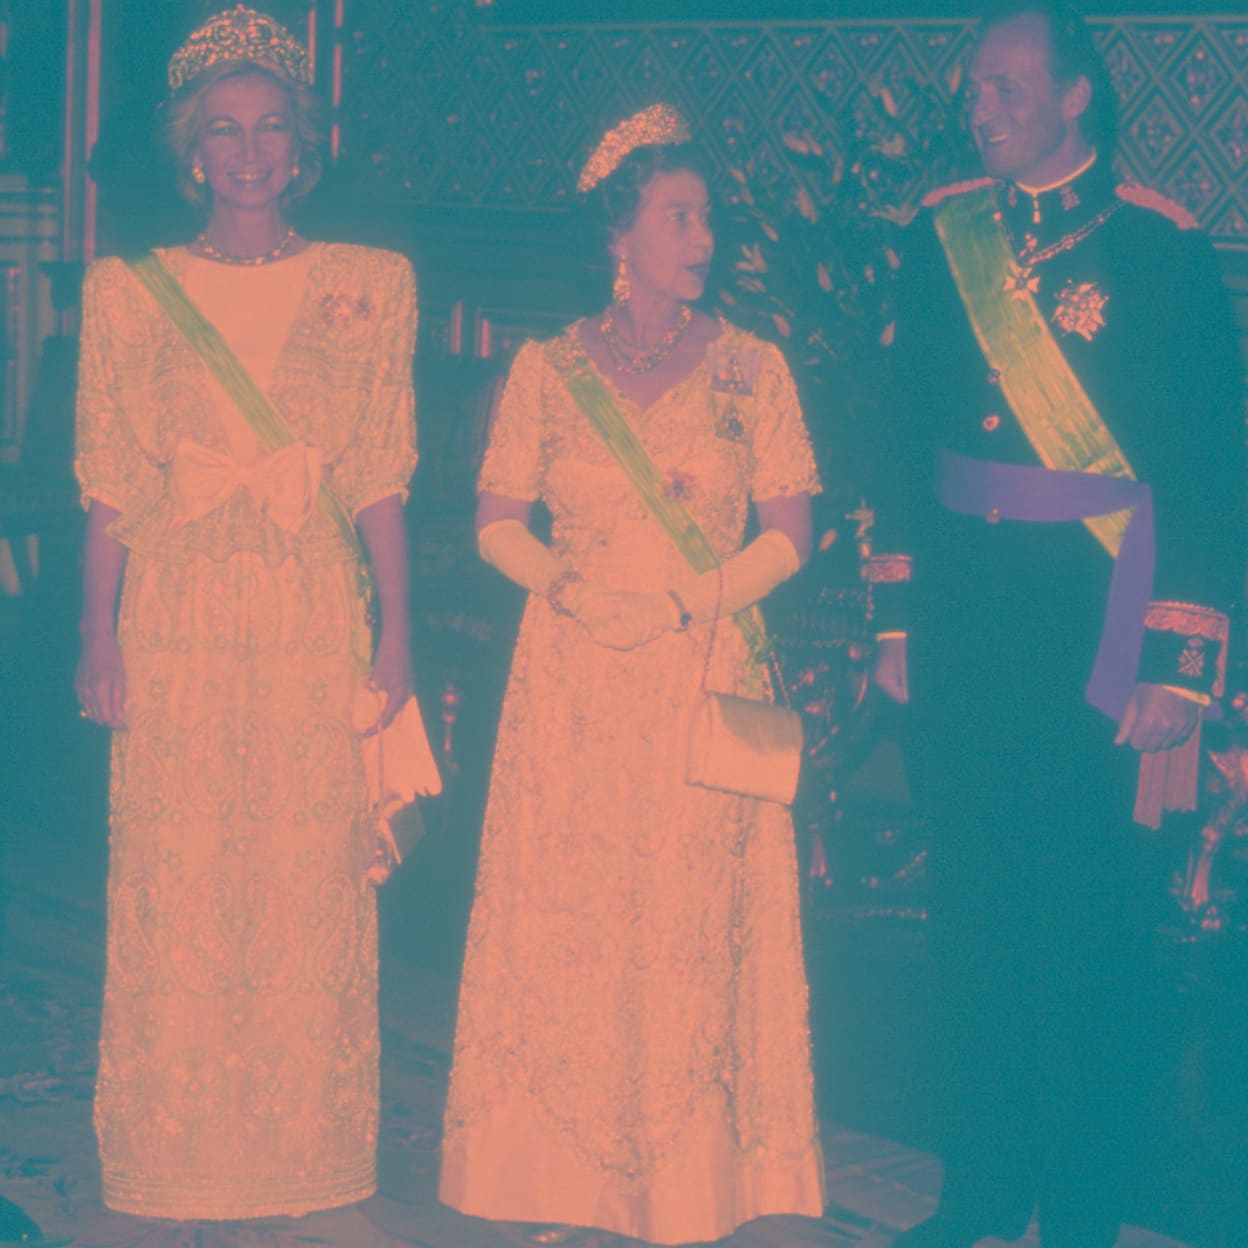 La reina Sofía, Isabel II y el rey Juan Carlos, en la cena oficial en el castillo de Windsor, celebrada en 1986 con motivo de la visita de los monarcas españoles. /getty images